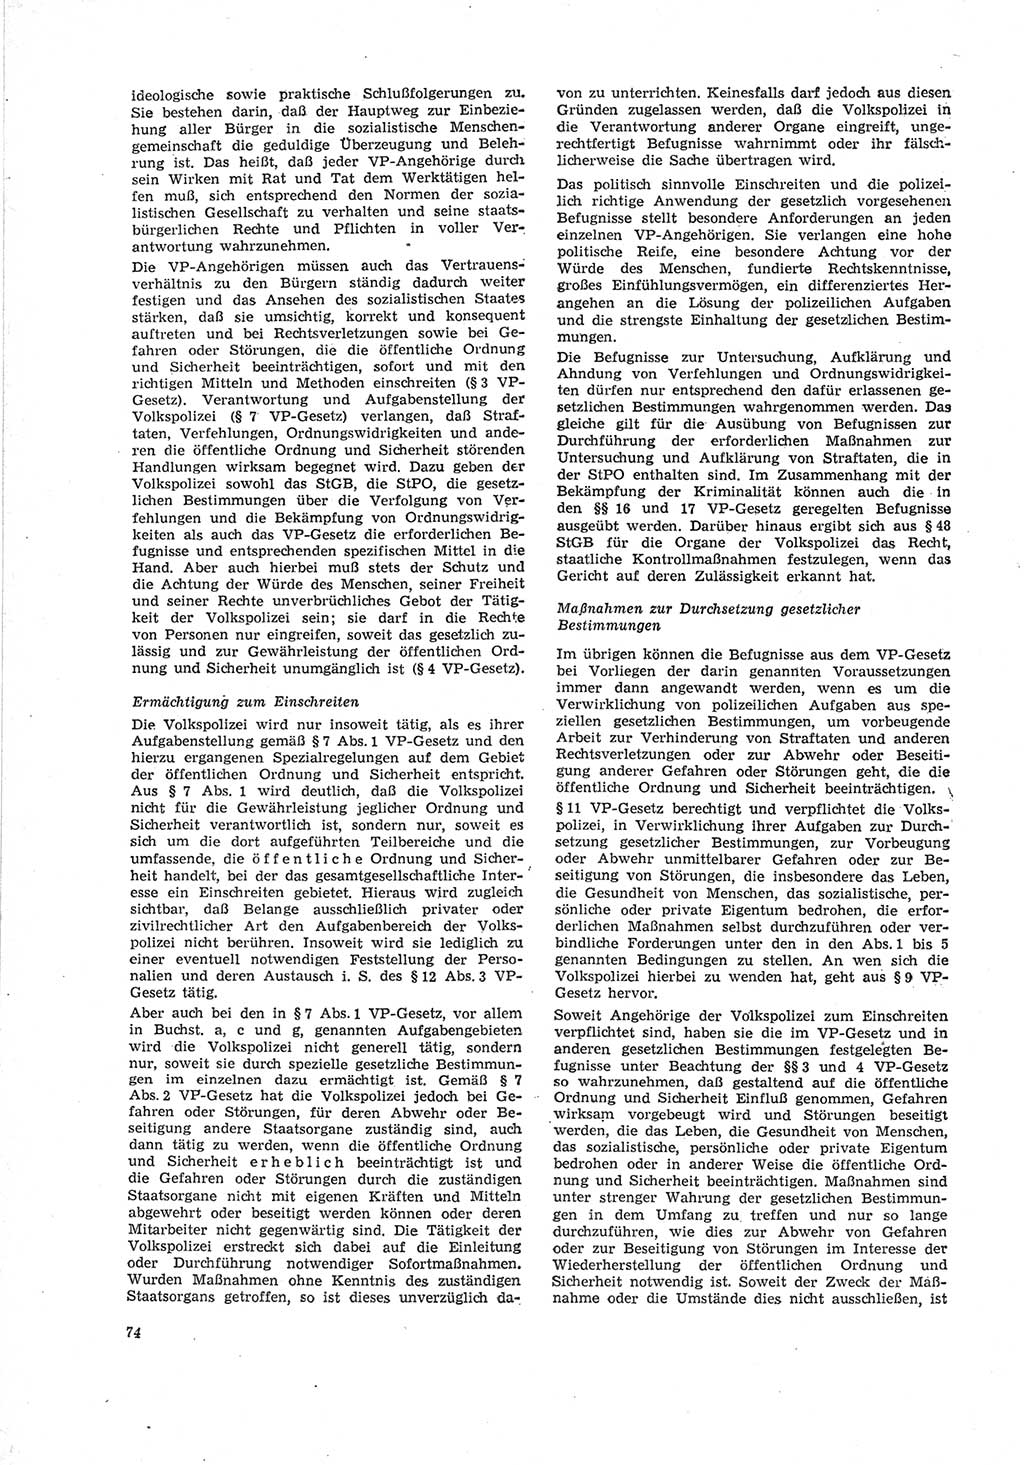 Neue Justiz (NJ), Zeitschrift für Recht und Rechtswissenschaft [Deutsche Demokratische Republik (DDR)], 23. Jahrgang 1969, Seite 74 (NJ DDR 1969, S. 74)